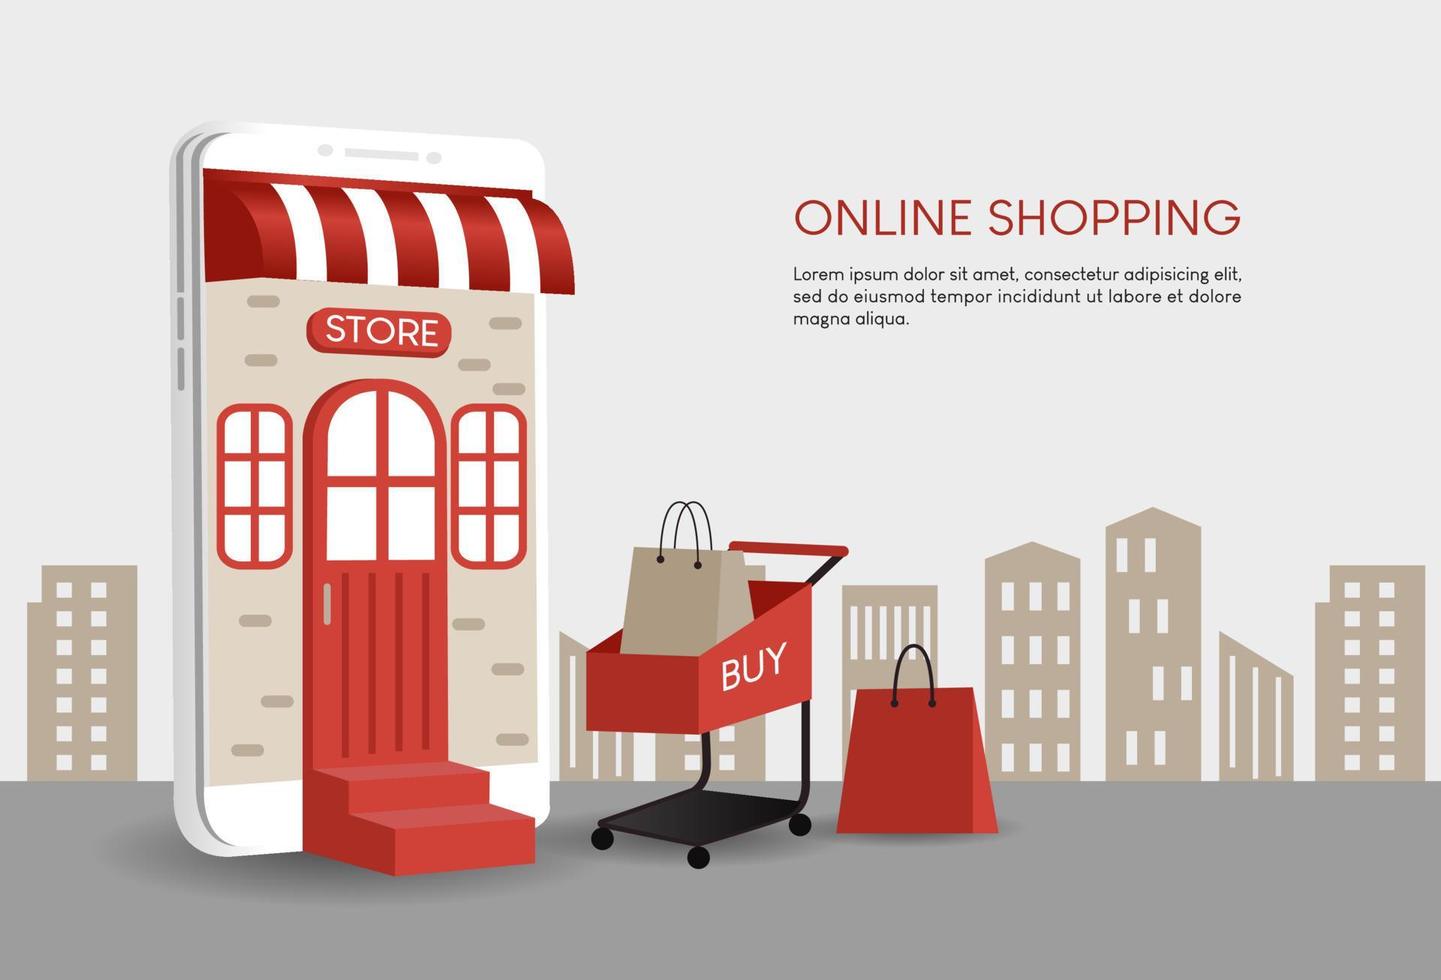 online winkelillustratie, er is een witte mobiel, een rood winkelwagentje en een boodschappentas. ontwerp voor website, verkoopbanner, bestemmingspagina, mobiele app, online winkel, online winkel, bedrijf vector